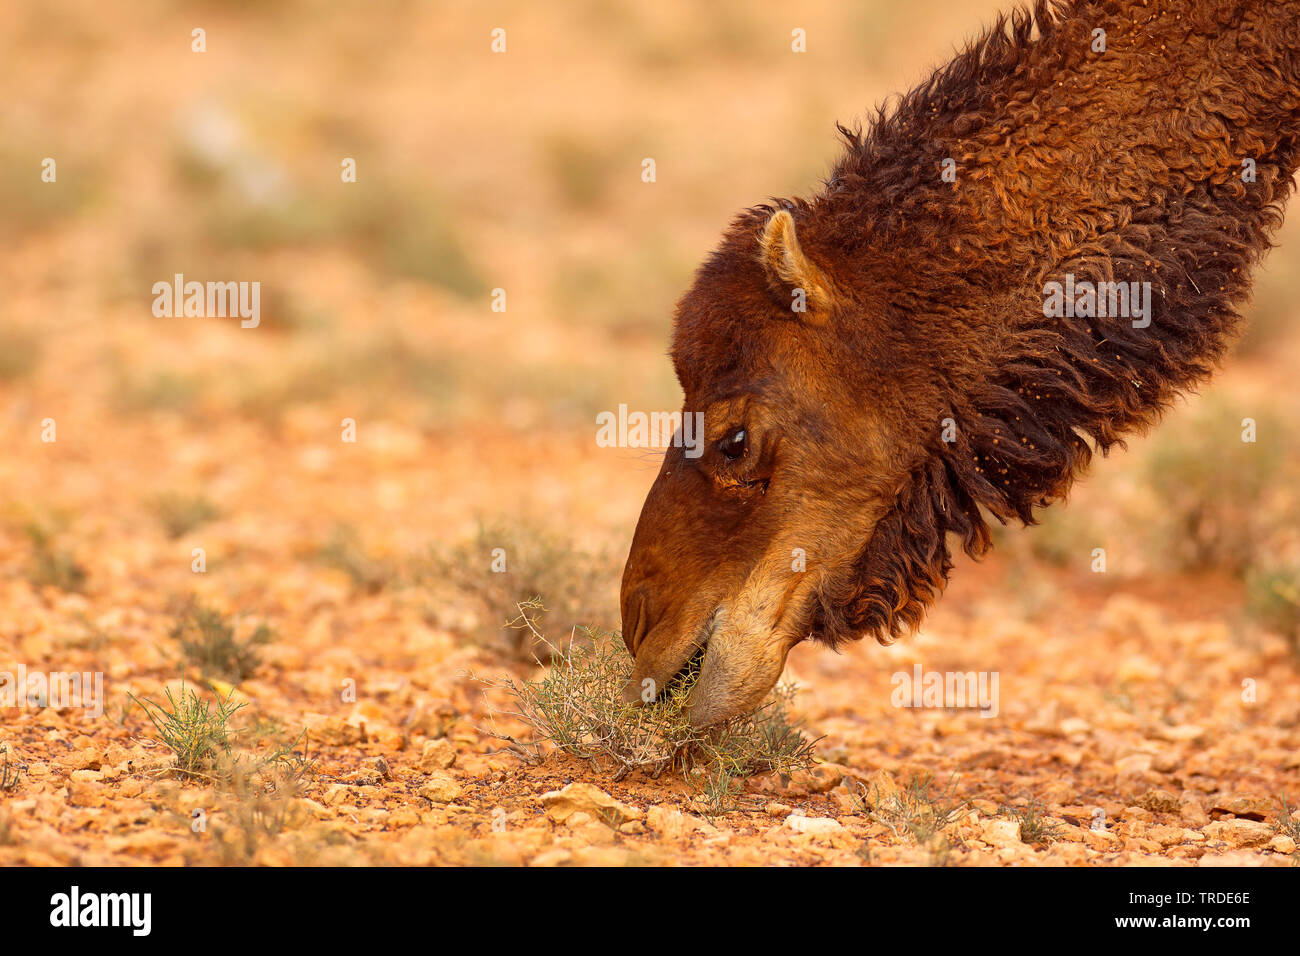 Un dromadaire, chameau (Camelus dromedarius), l'alimentation dans le désert rocailleux, portrait, Maroc, Boumalne Banque D'Images